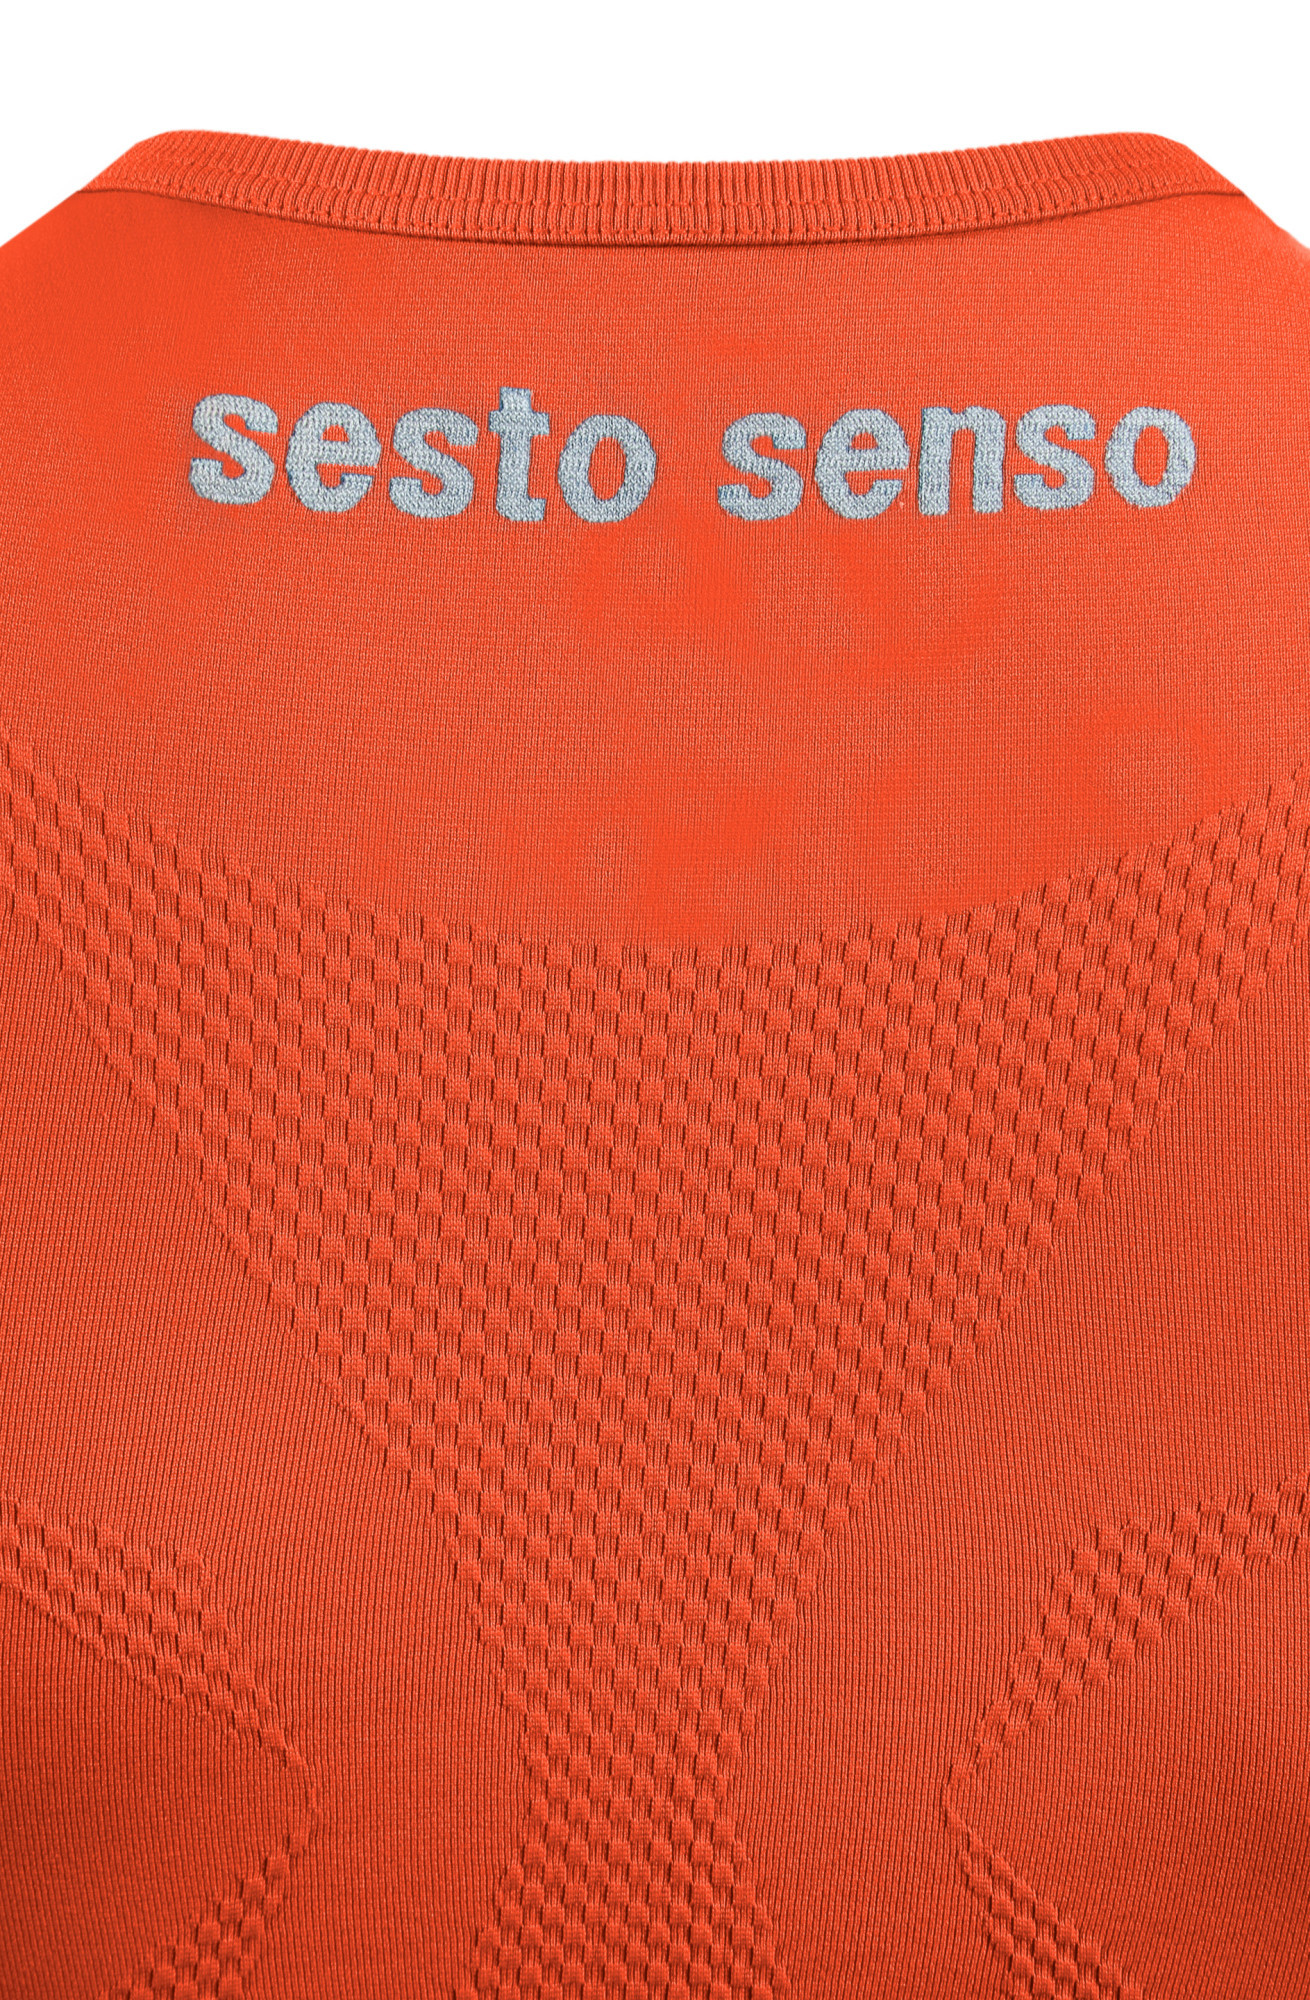 Sesto Senso Thermo Tílko CL38 Orange L/XL